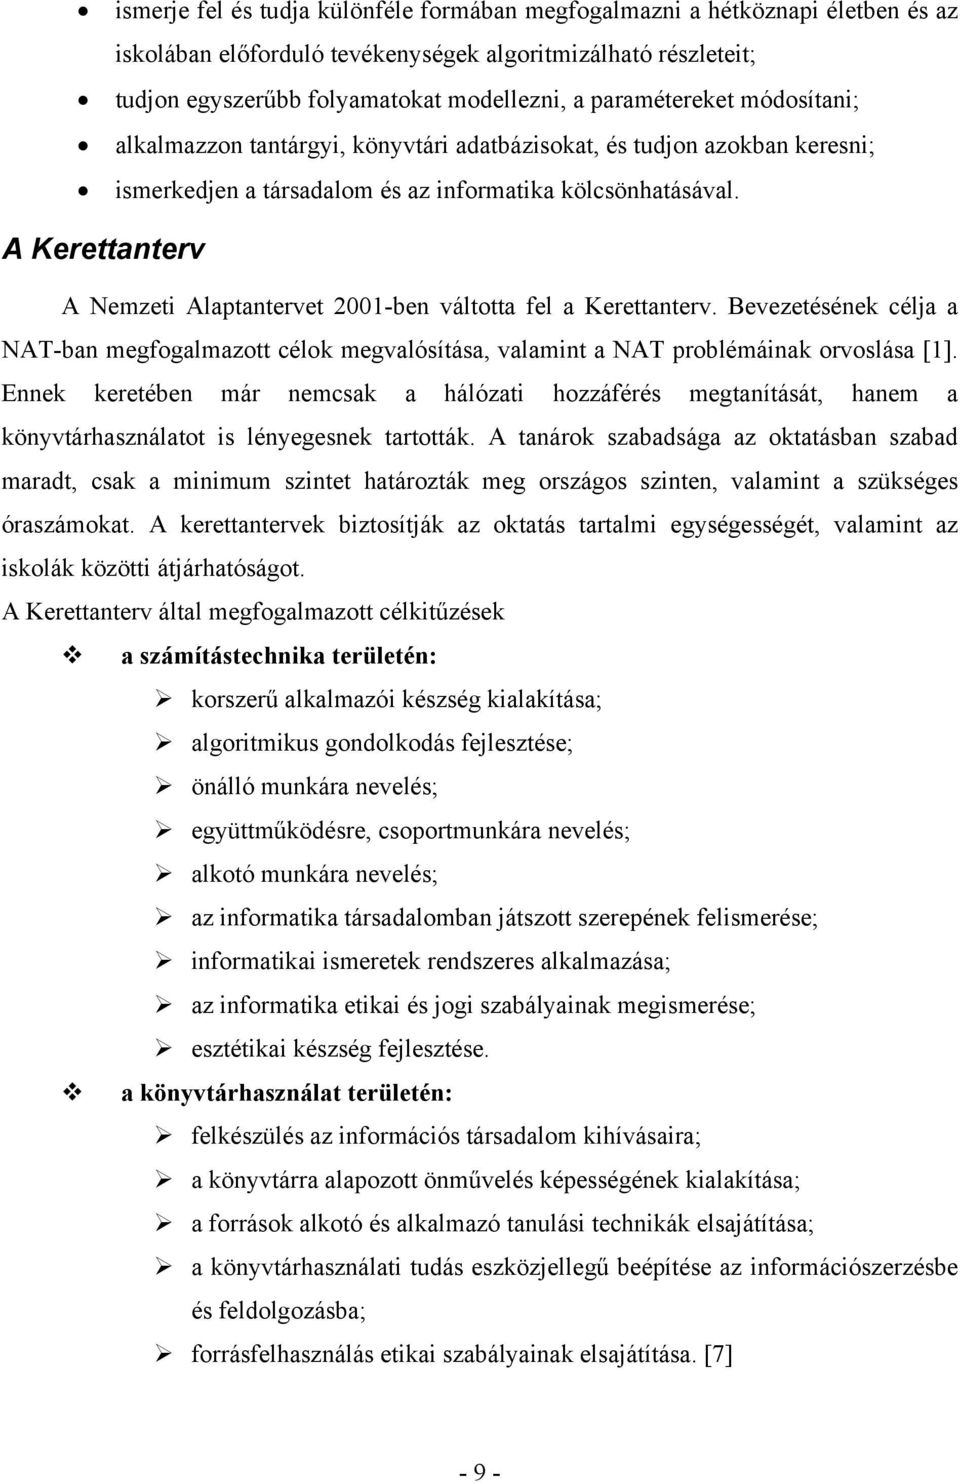 A Kerettanterv A Nemzeti Alaptantervet 2001-ben váltotta fel a Kerettanterv. Bevezetésének célja a NAT-ban megfogalmazott célok megvalósítása, valamint a NAT problémáinak orvoslása [1].